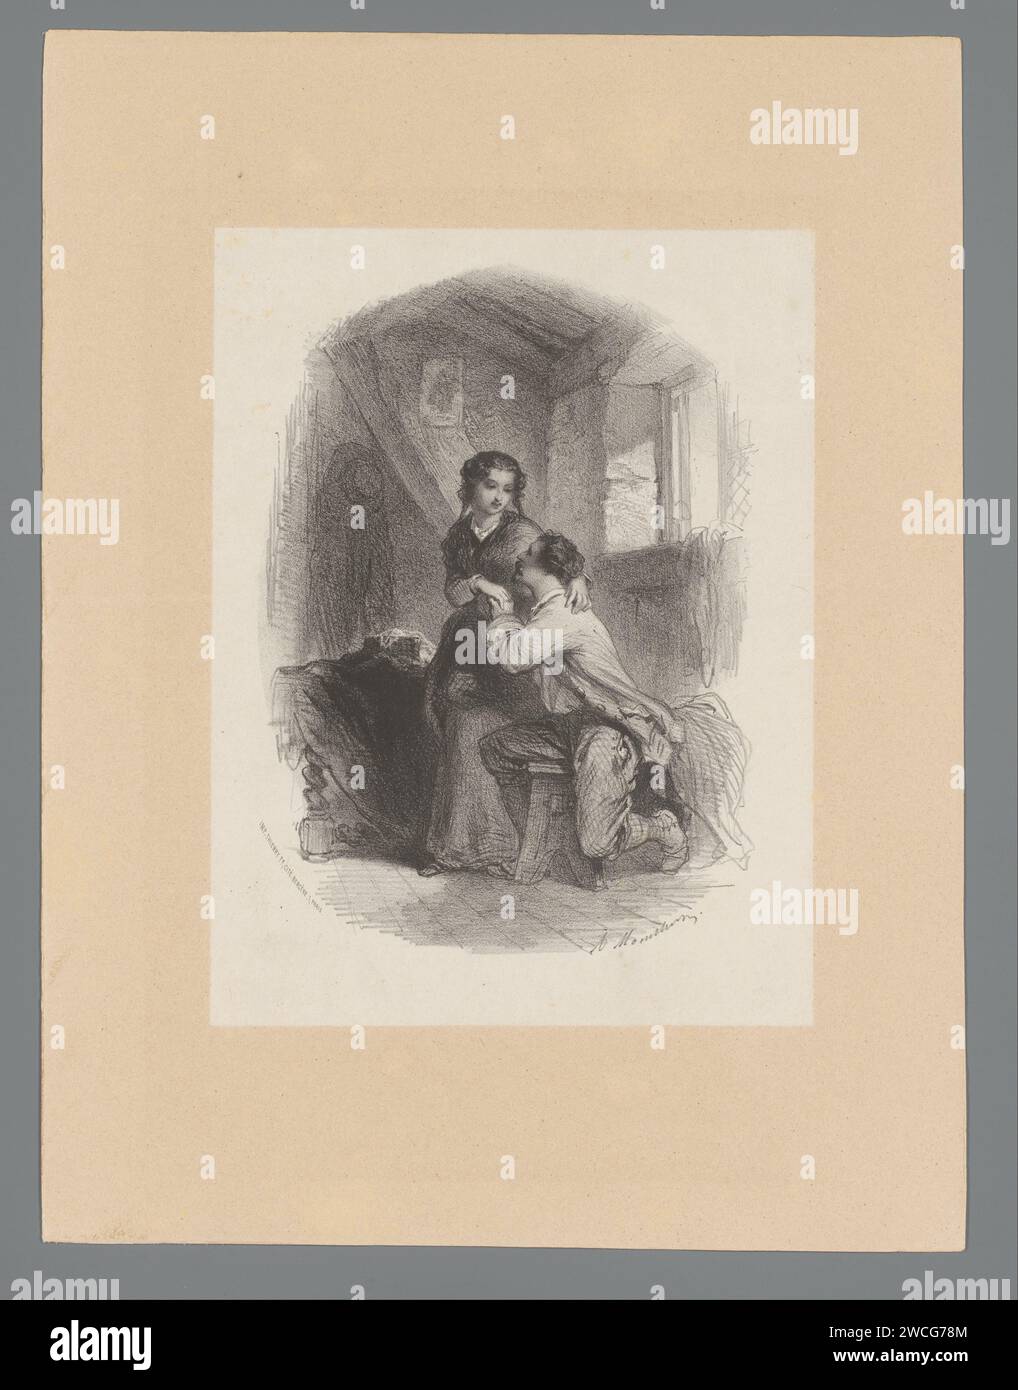 Liebespaar in einem einfachen Dachzimmer, Adolphe Mouilleron, 1833 - 1870 Druckpapier Paris. Ein paar Liebhaber. Dachgeschoss, Ausformung Stockfoto